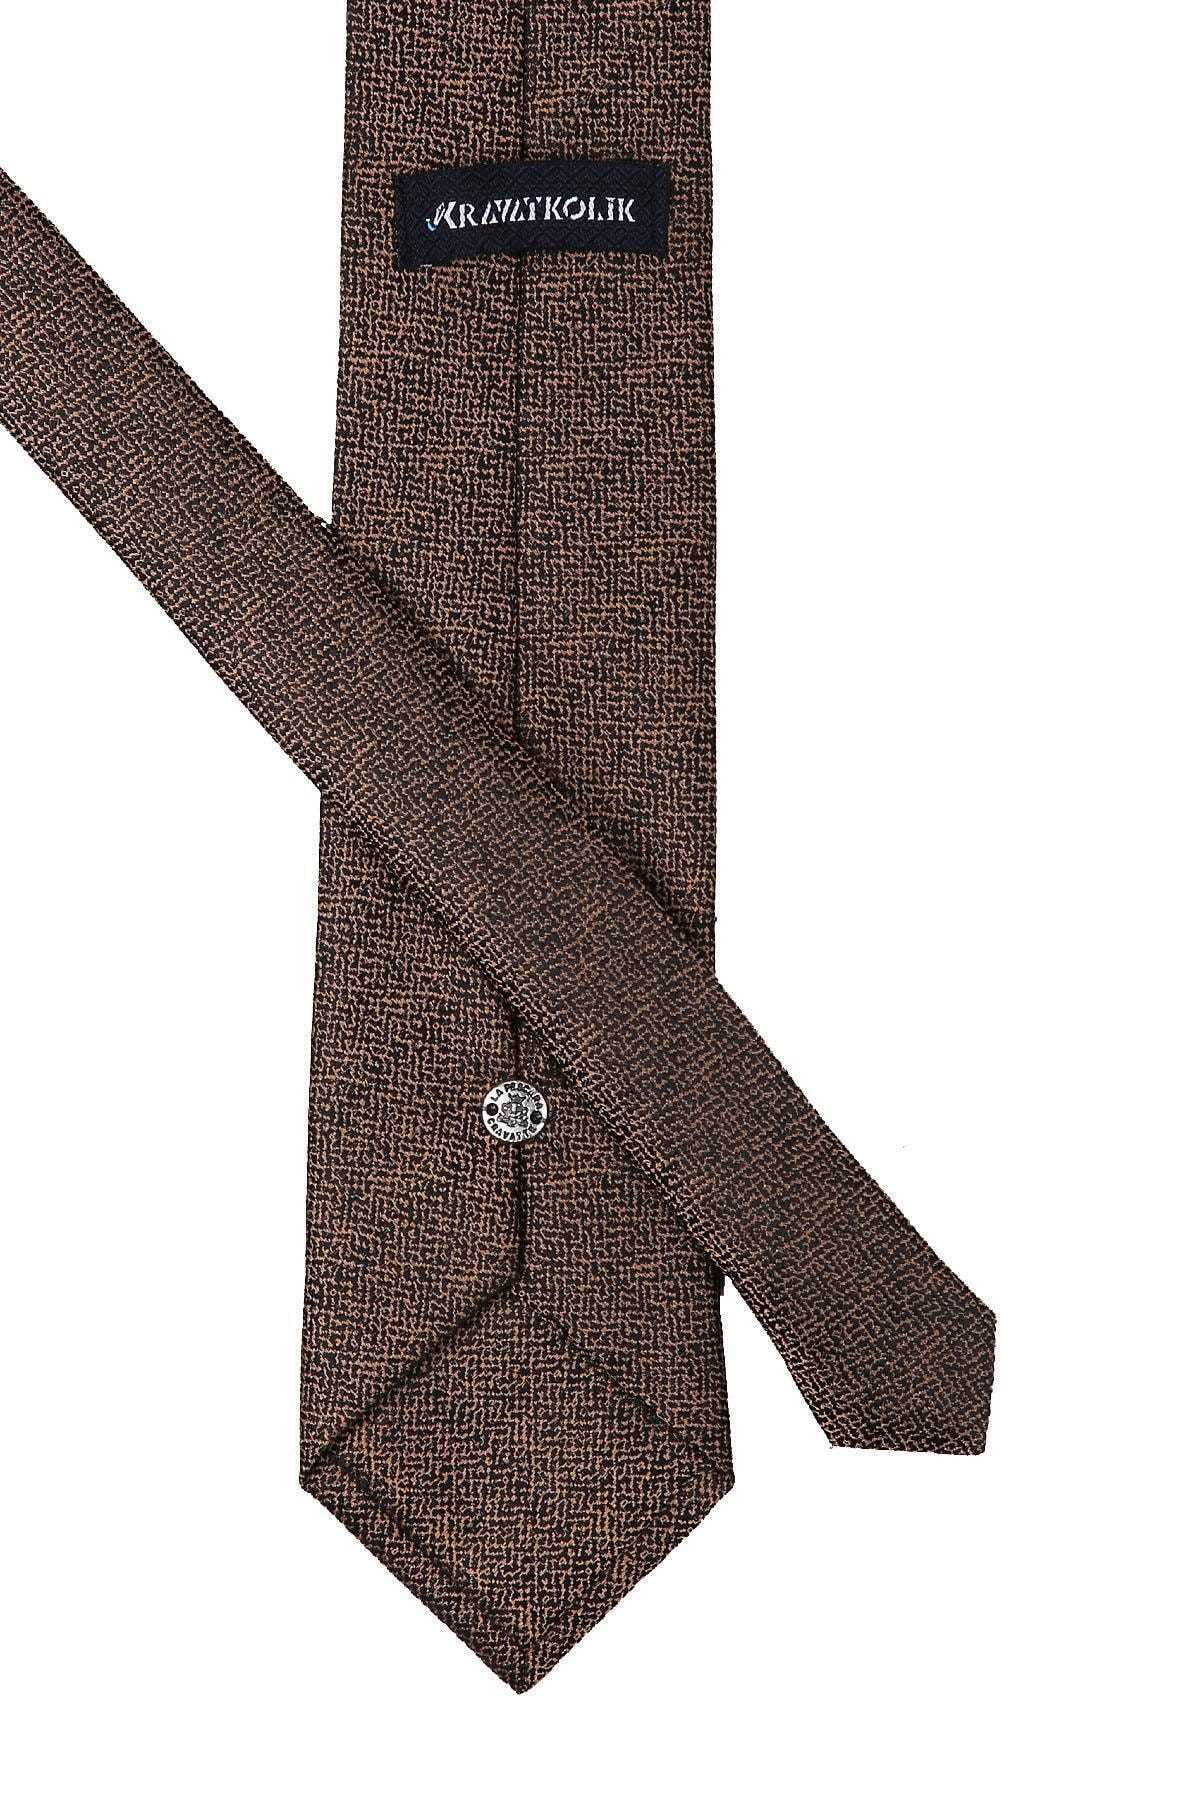  کراوات مردانه مدل 2021 برند Kravatkolik رنگ مشکی کد ty64988289